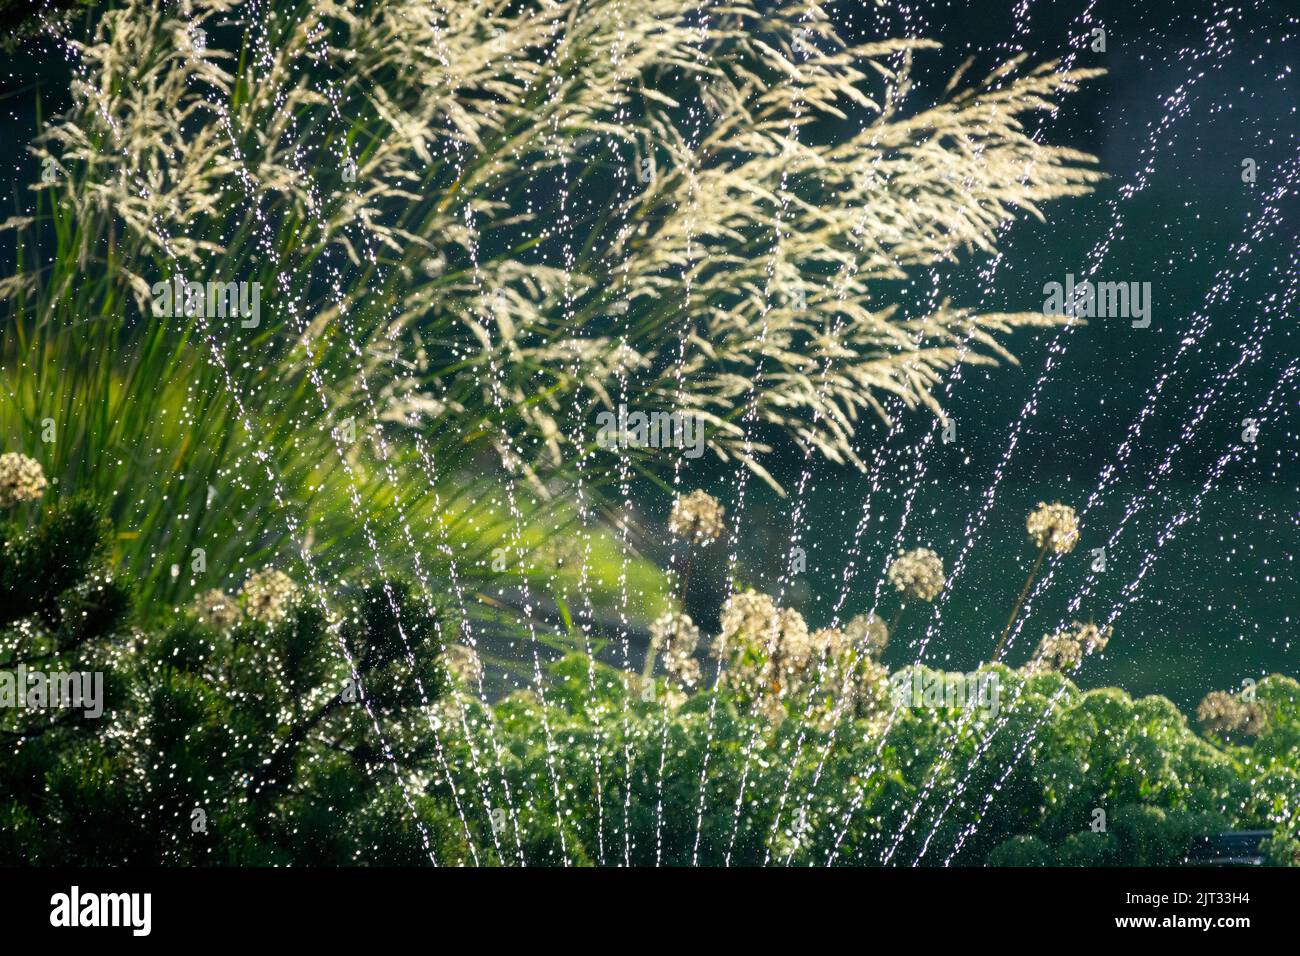 Irrigation, Garden, Sprinkler, Spraying, Summer, Watering garden, Stipa splendens, Chee Grass Stock Photo